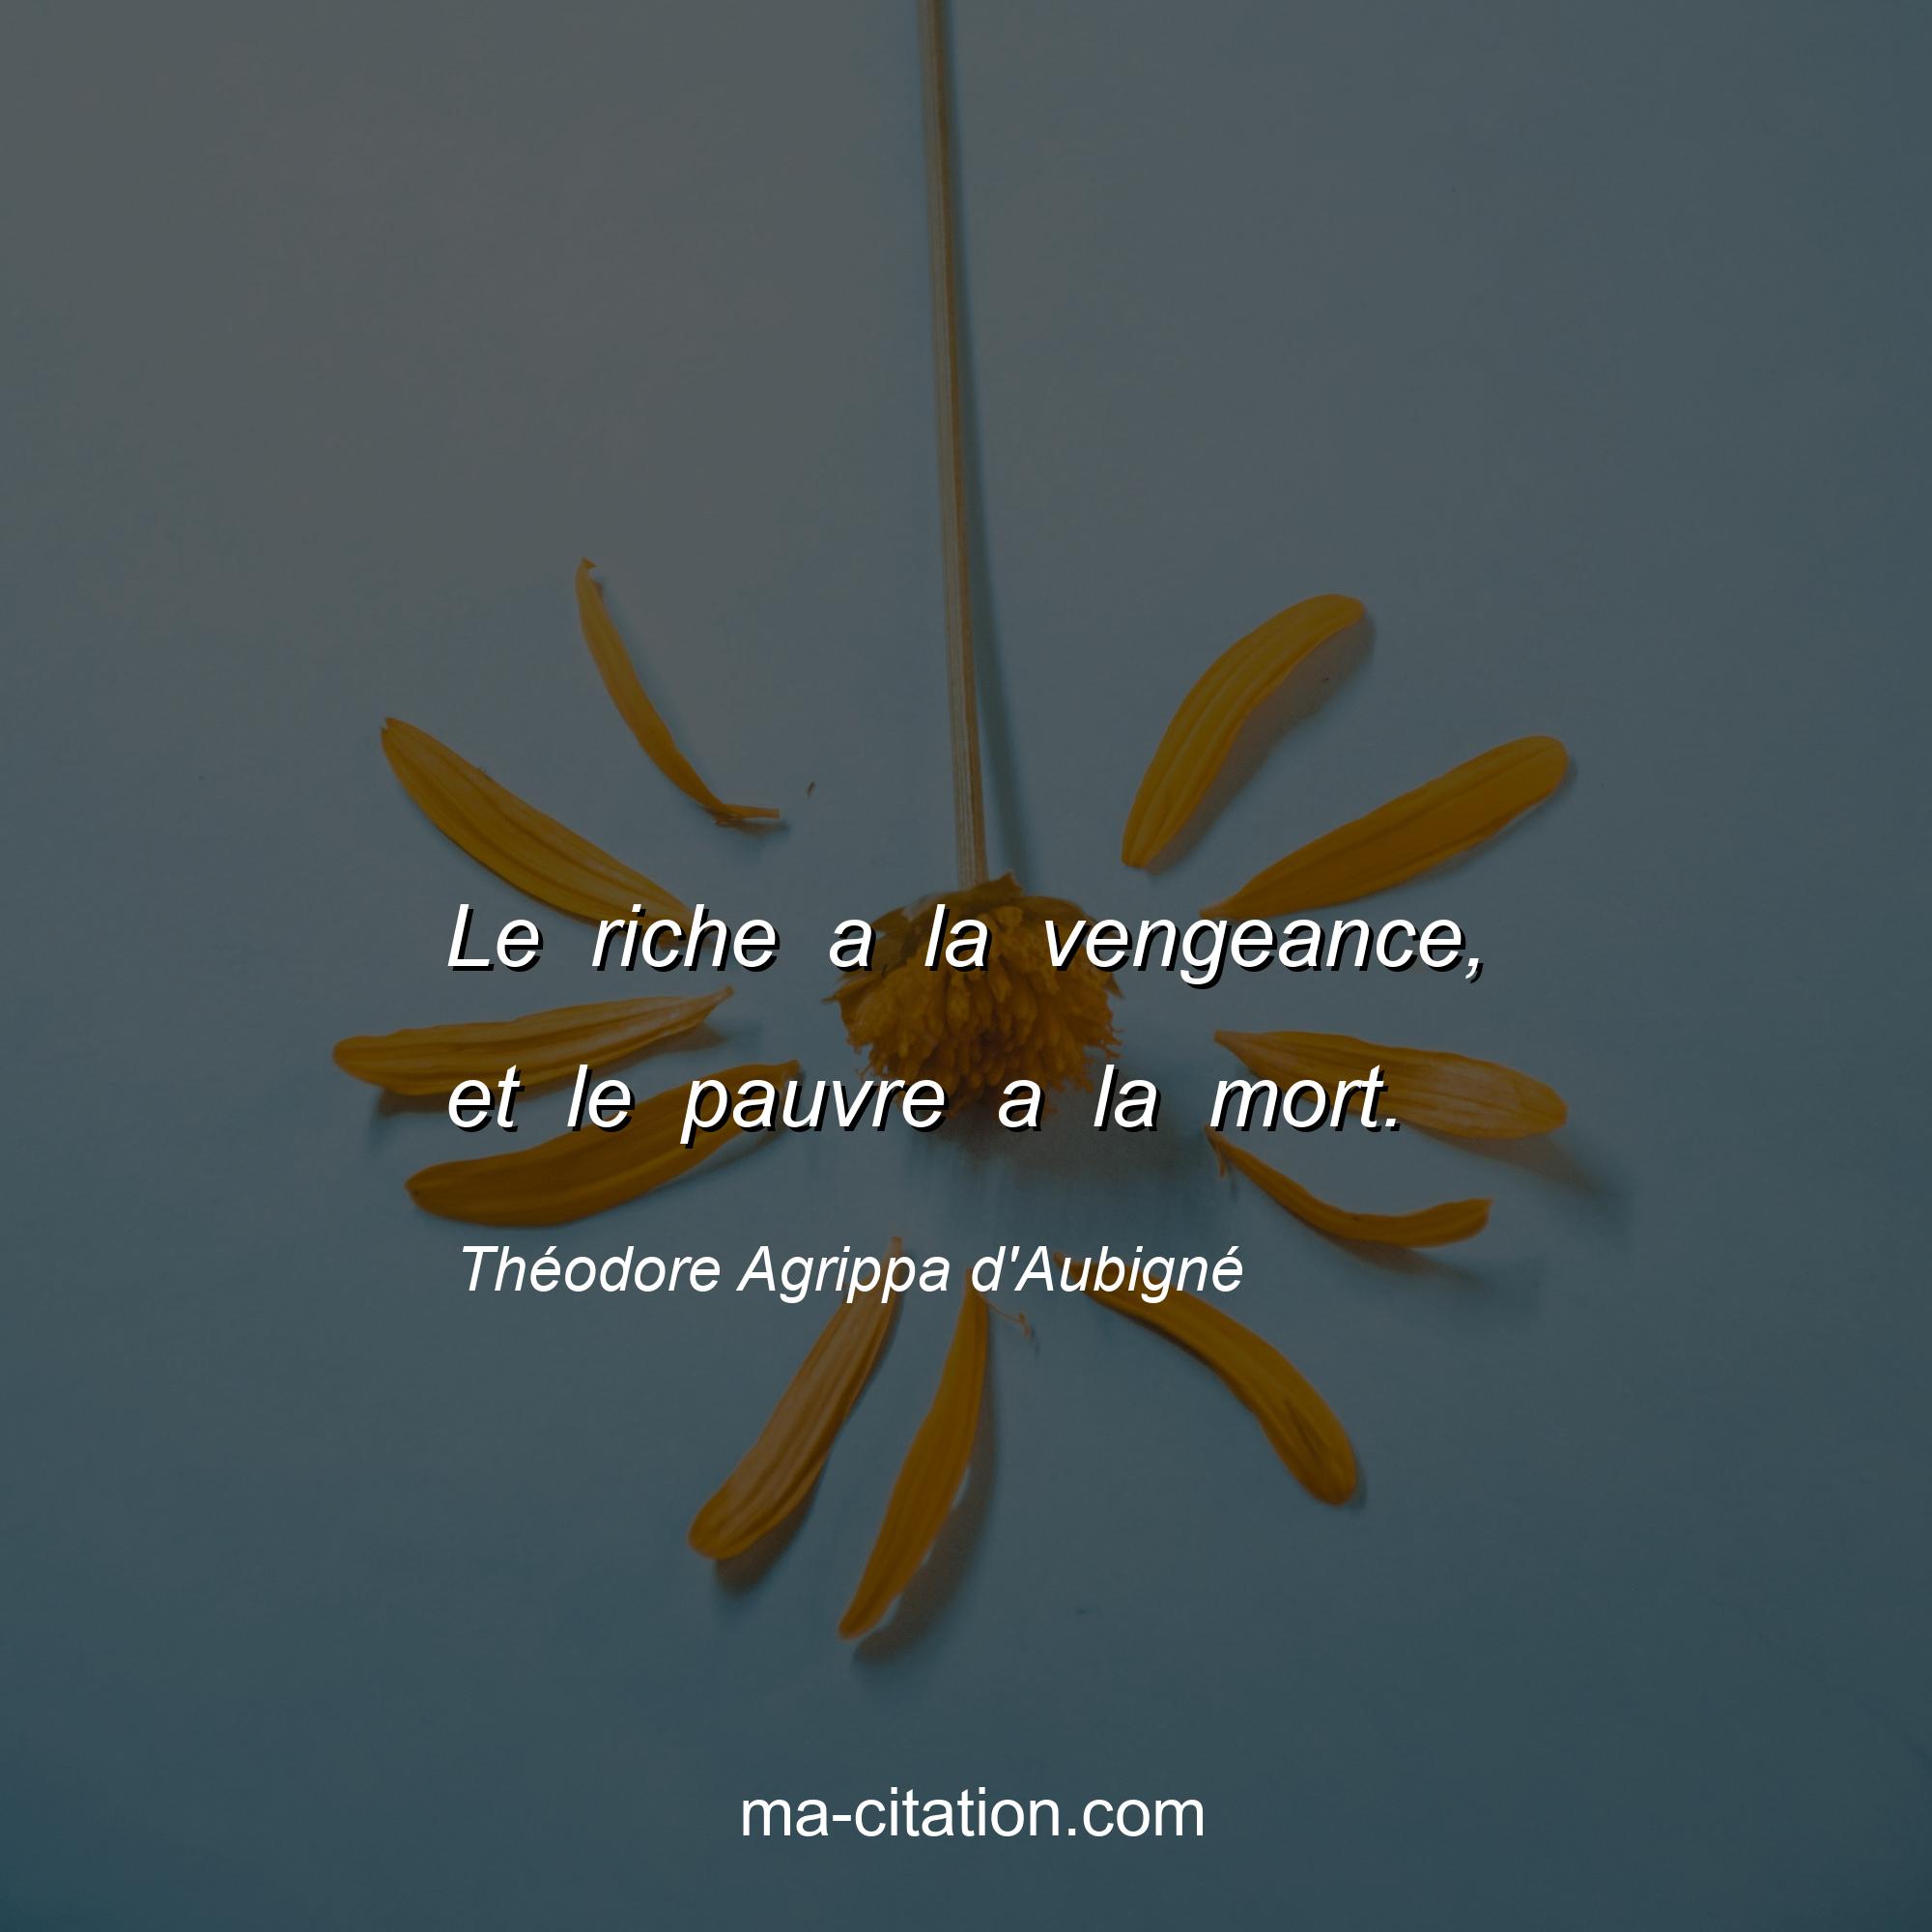 Théodore Agrippa d'Aubigné : Le riche a la vengeance, et le pauvre a la mort.